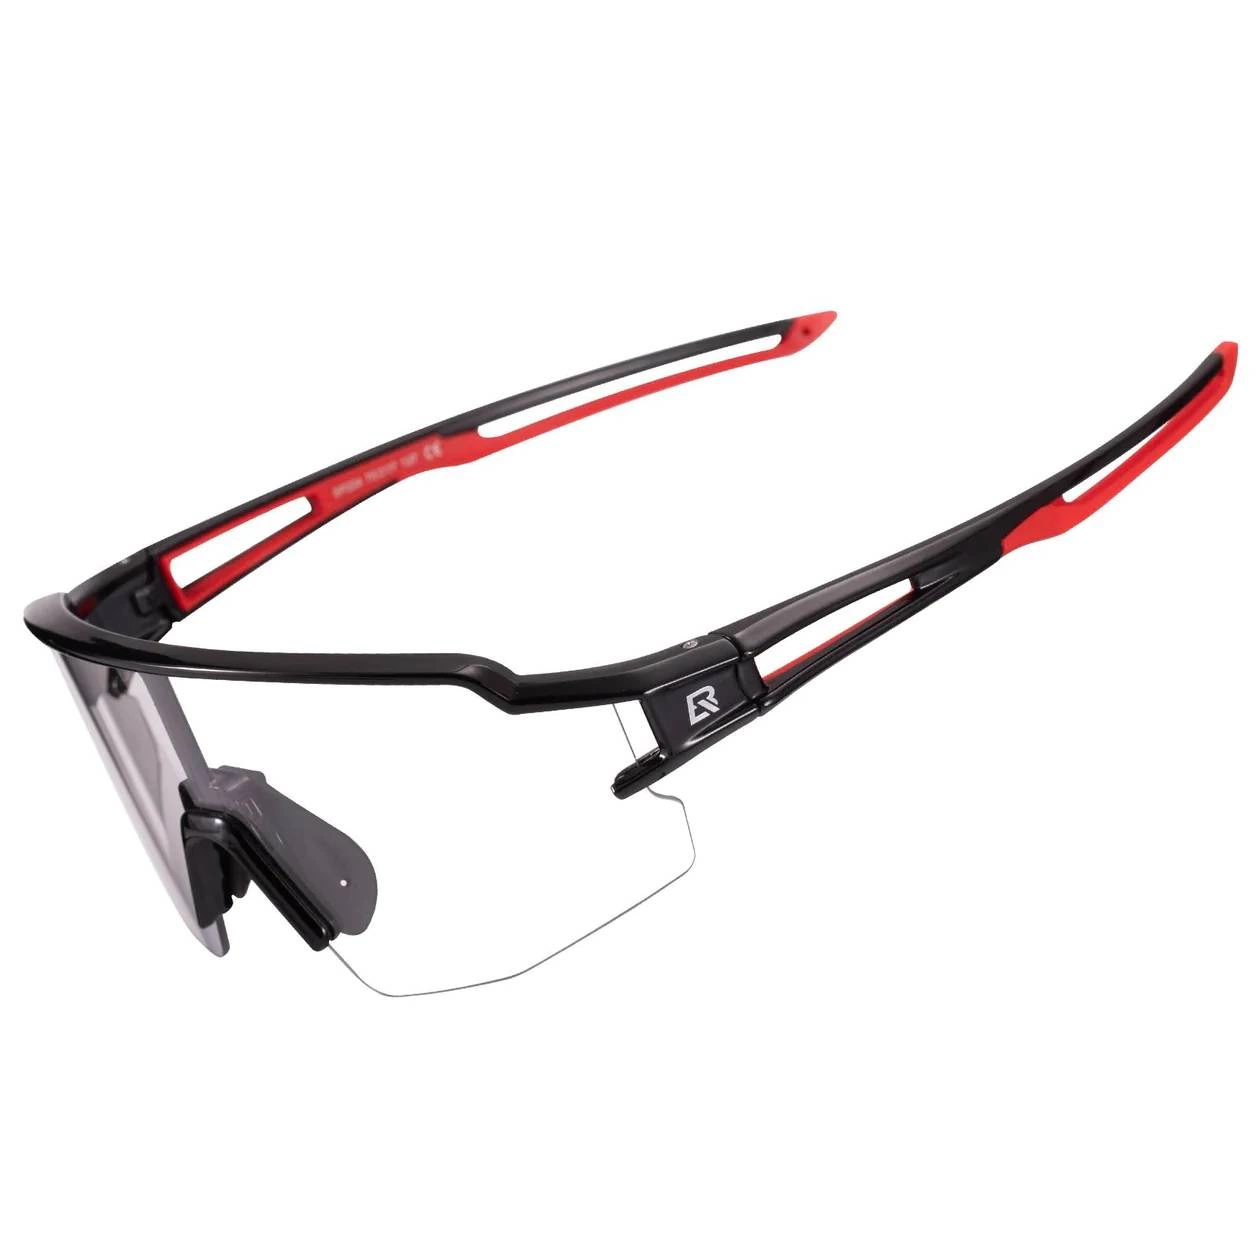 Cyklistické brýle Rockbros 10173 fotochromatické UV400 - černé/červené